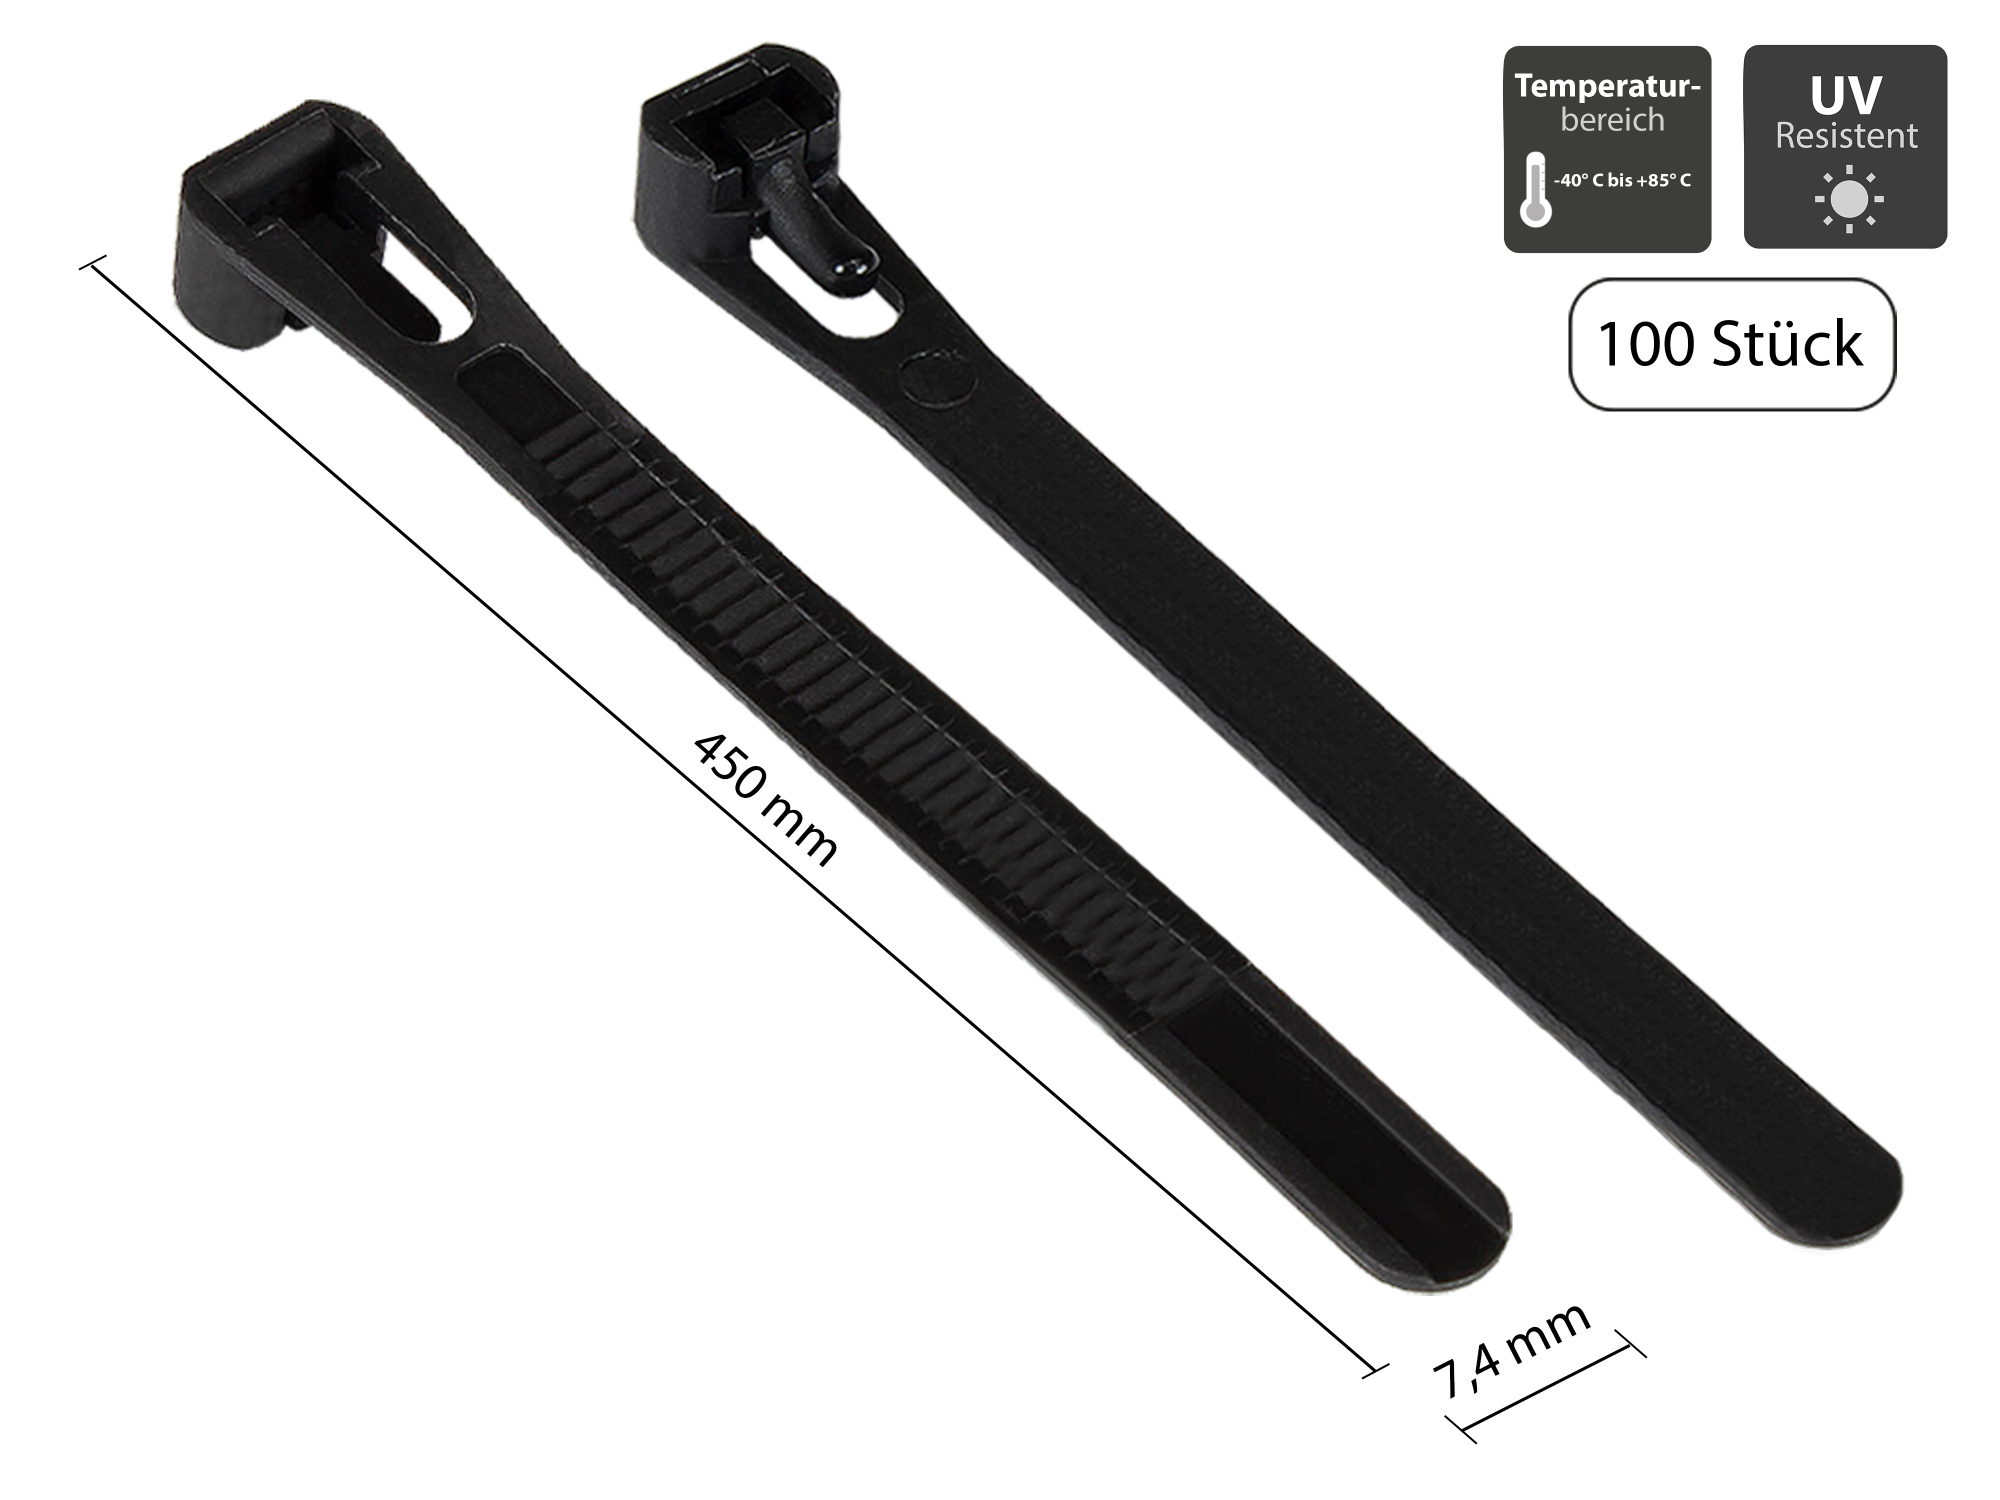 Wiederverwendbarer Kabelbinder 450 mm x 7,4 mm, schwarz, UV-resistent, -40 °C bis +85 °C, 100 Stück